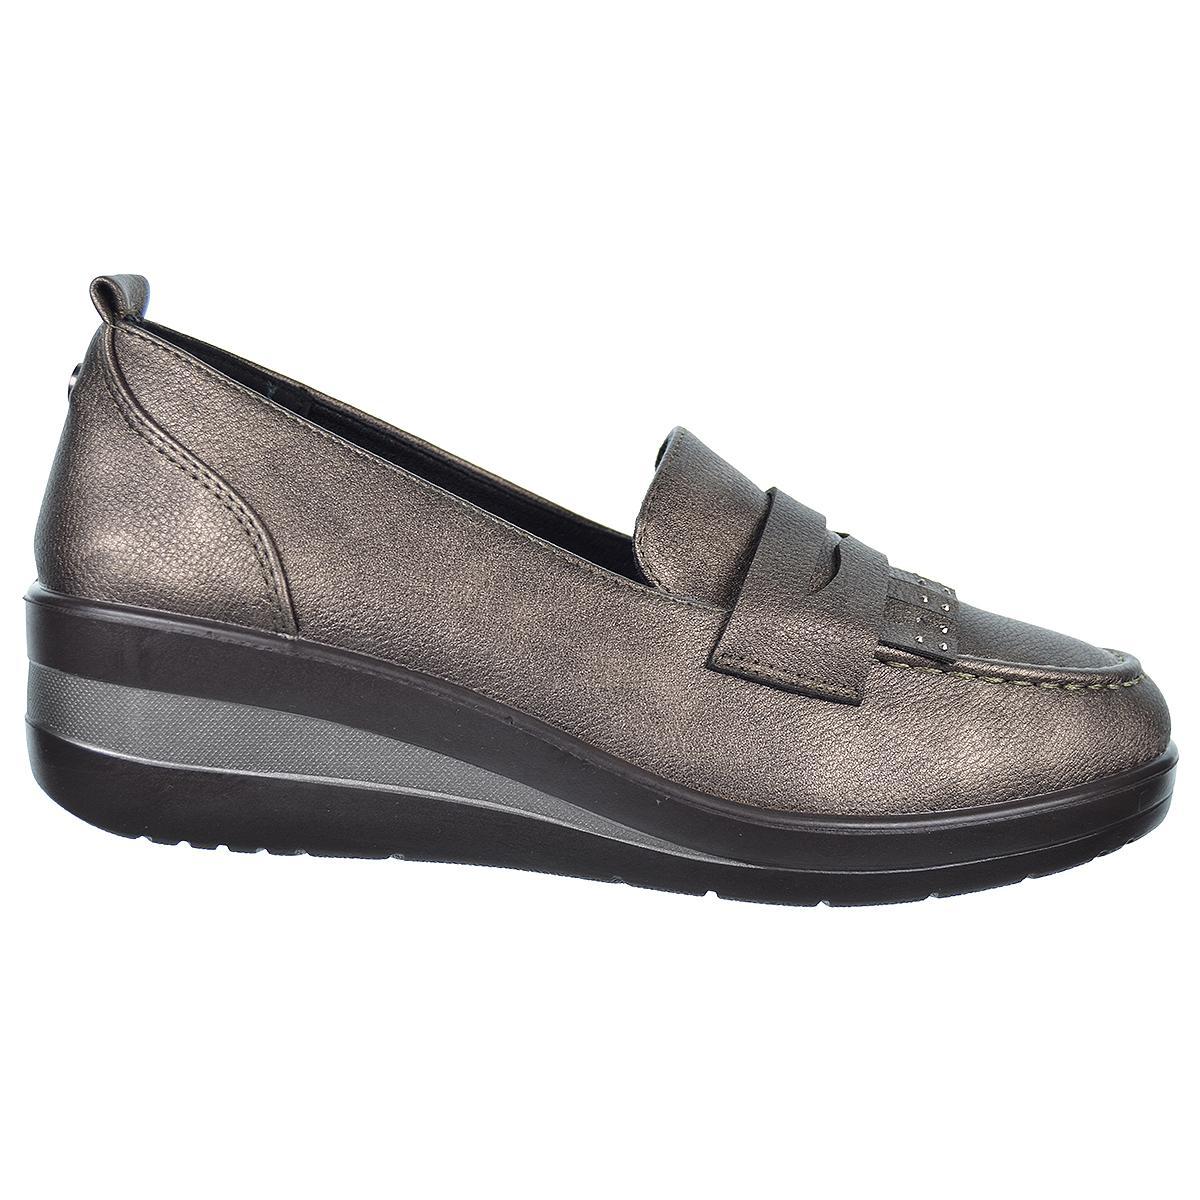 25333 Amarpies Zapato Confort estilo mocasín en sintético. Plantilla acolchada extraíble. Suela de caucho cuña ligera y flexible